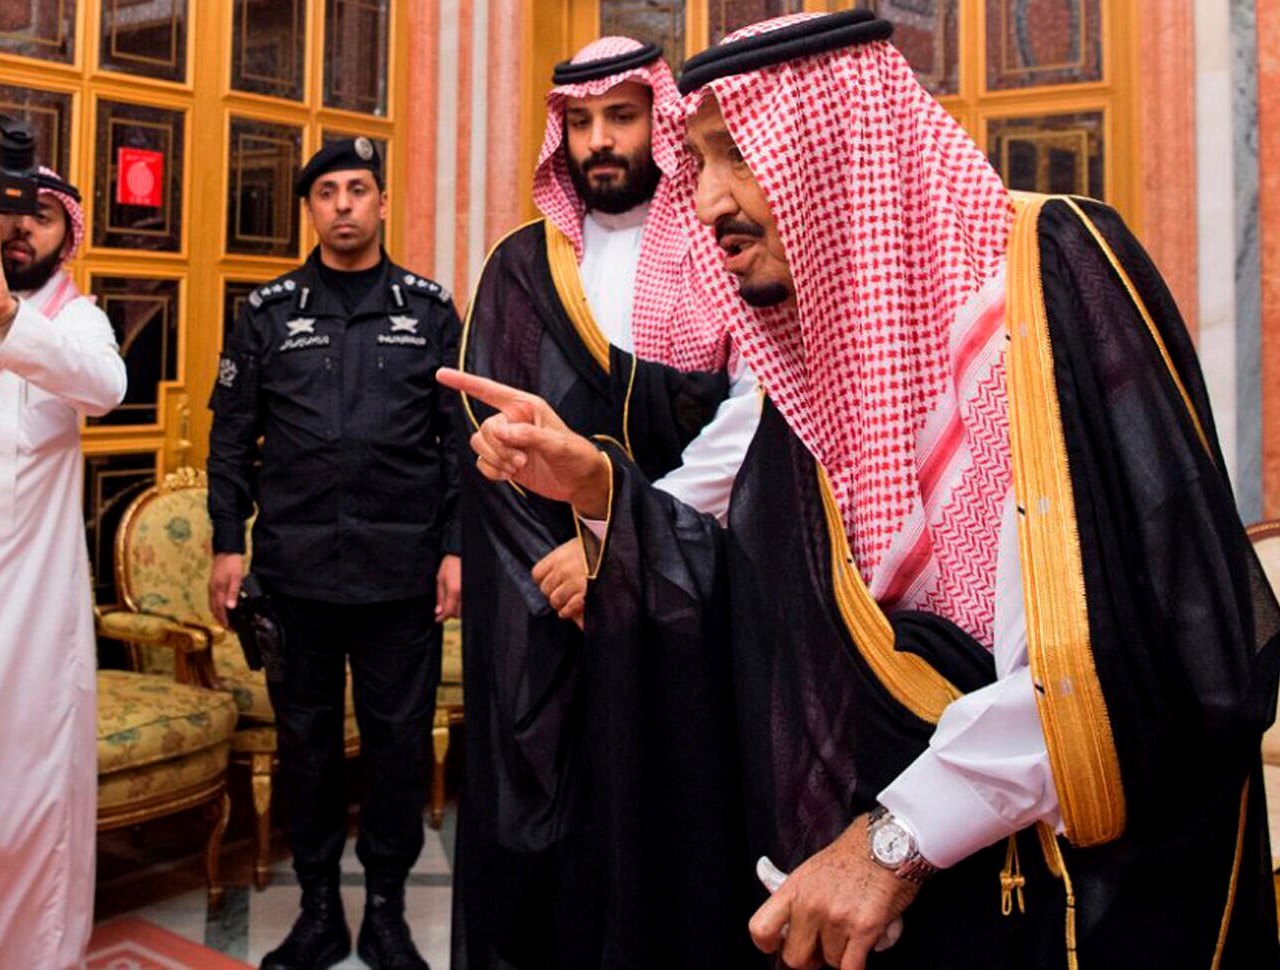 عربستان قطعا روابش را با اسرائیل عادی سازی می کند؛ فقط زمانش مشخص نشده / تا زمانی که ملک سلمان در قدرت است، این احتمال کم است / خالد بن سلمان، پسر پادشاه عربستان گفته «ما بدون اسرائیل موفق نمی‌شویم»